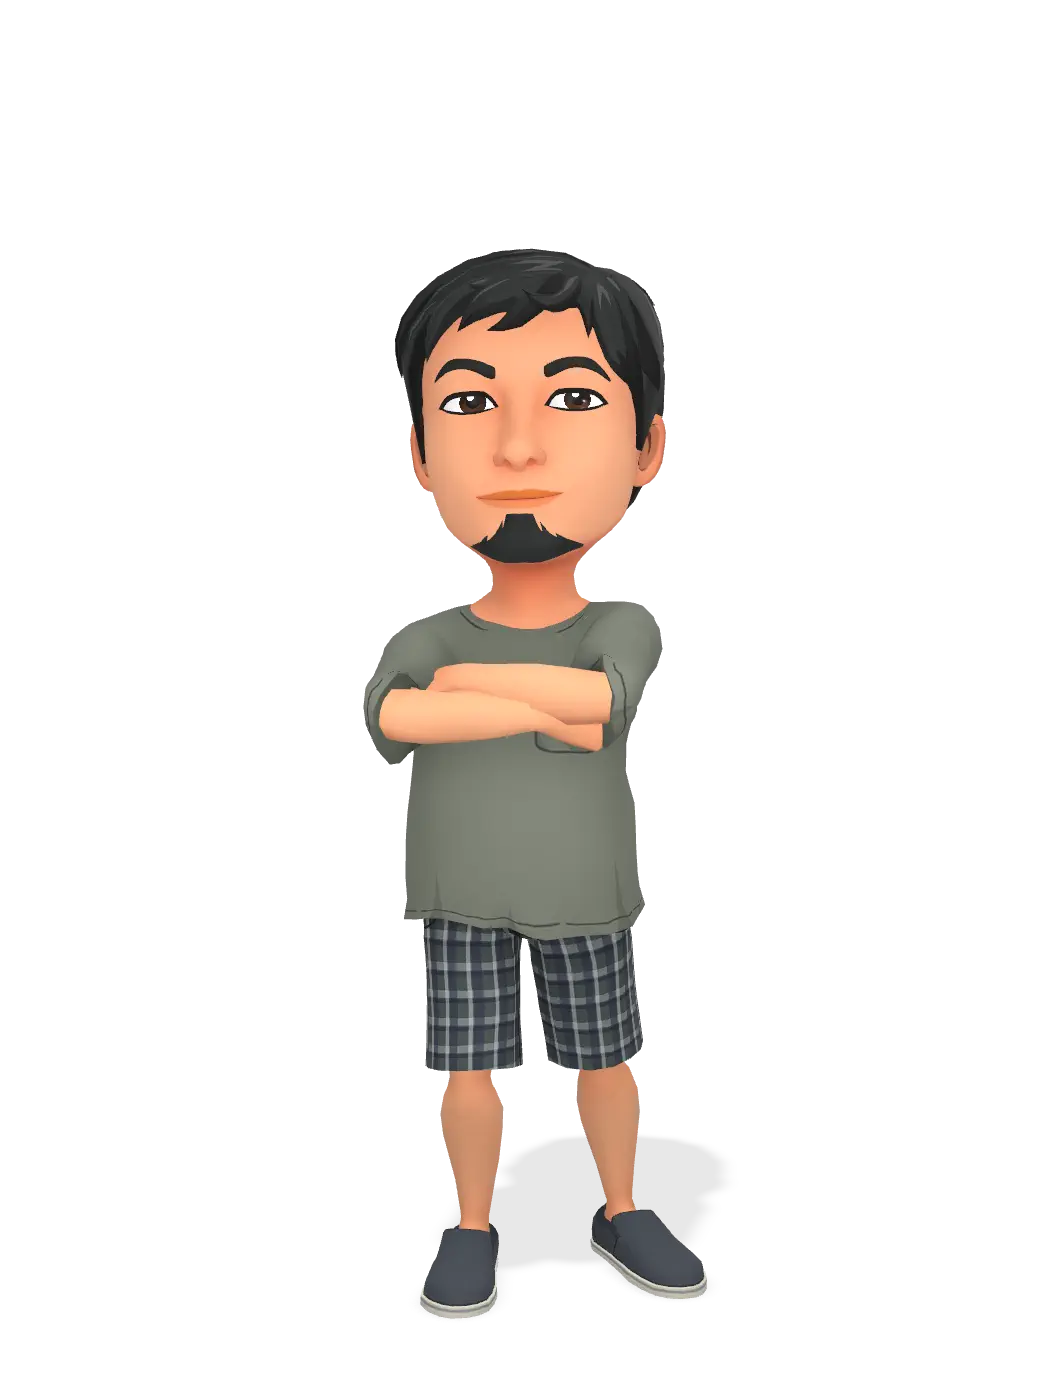 3D Bitmoji for veverdelrosario avatar